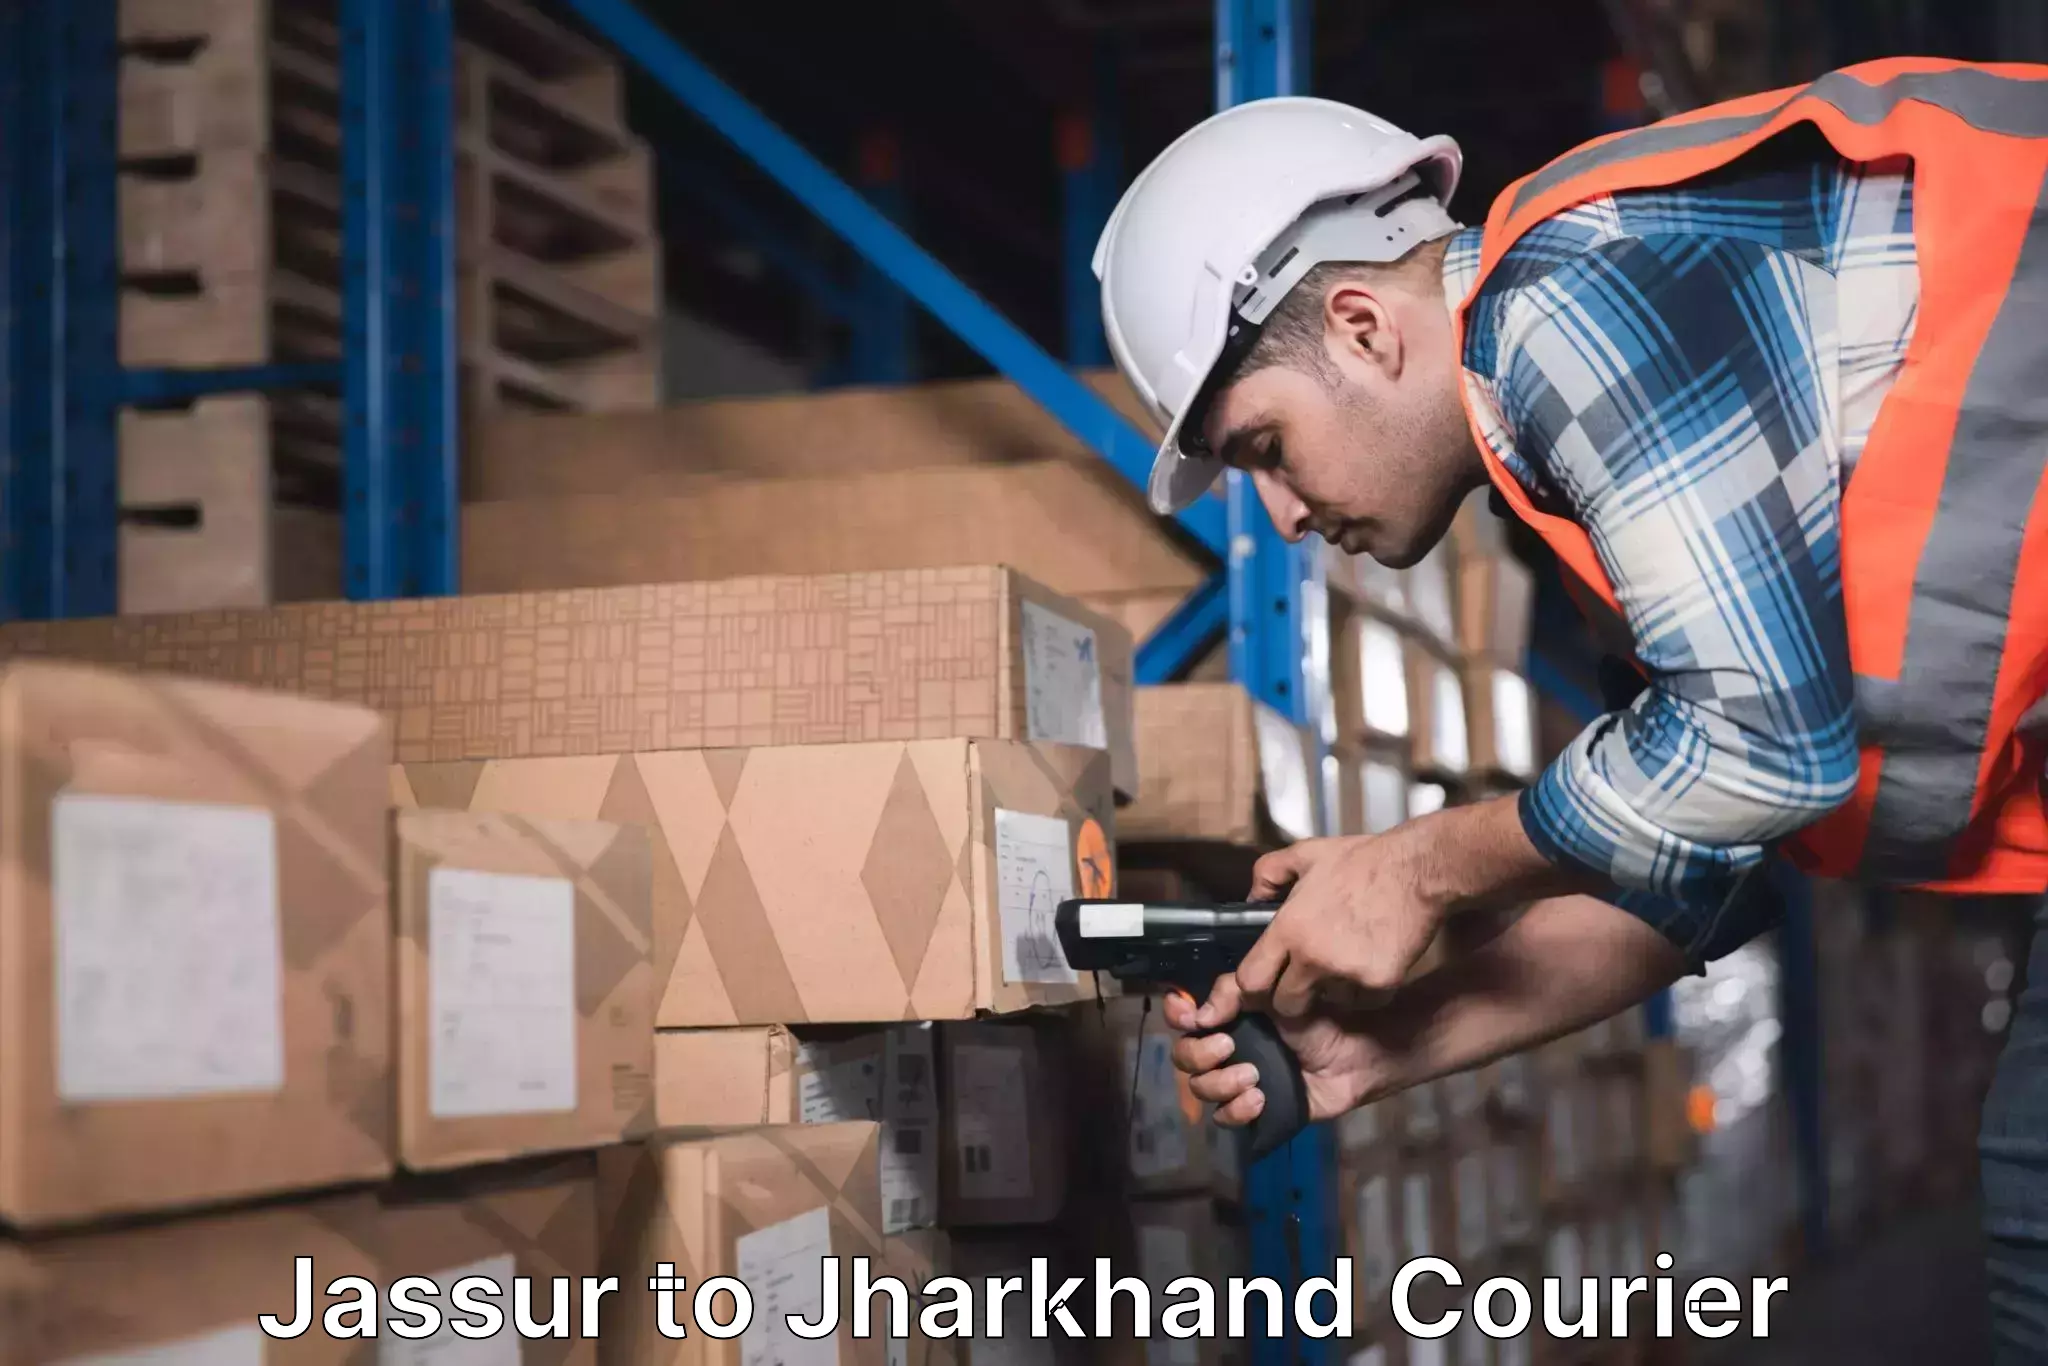 Global logistics network Jassur to Jharkhand